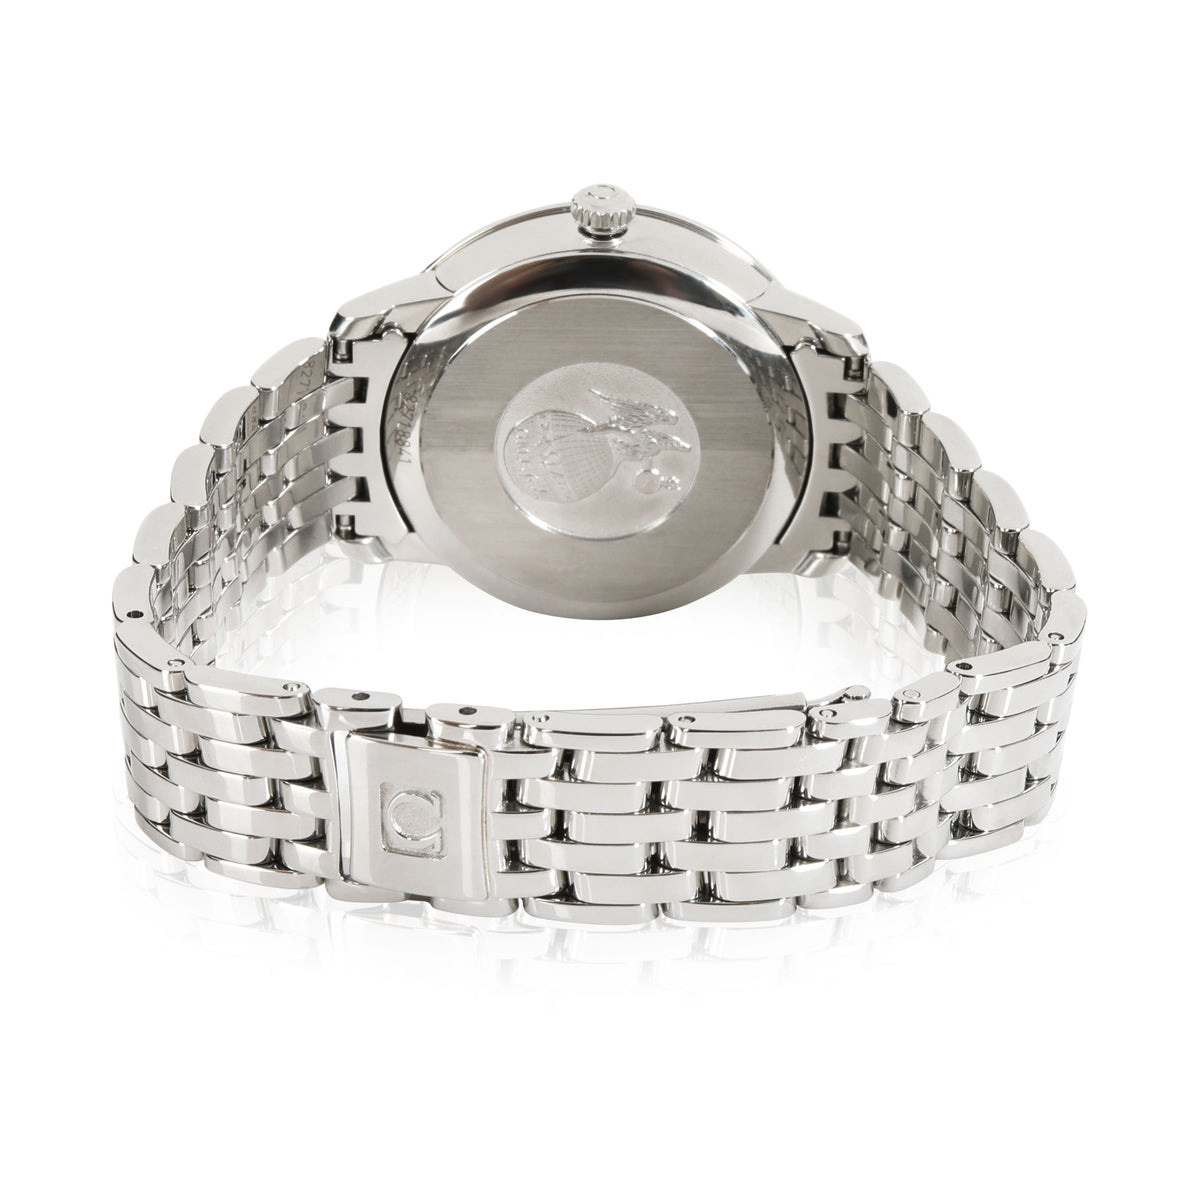 Omega DeVille 424.10.33.20.52.001 Women's Watch in  Stainless Steel